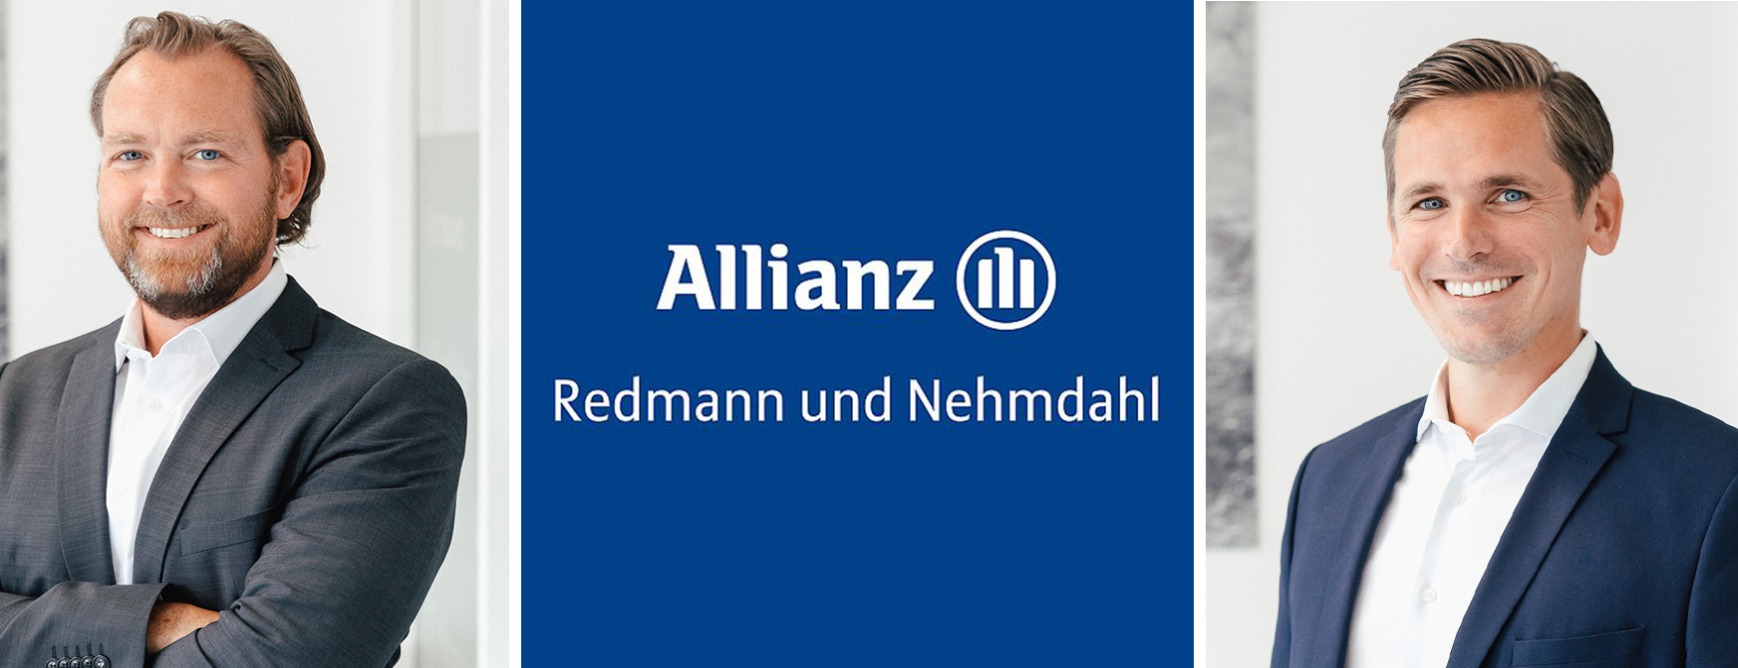 Allianz Versicherung Redmann und Nehmdahl OHG Flensburg - Redmann und Nehmdahl Allianz 